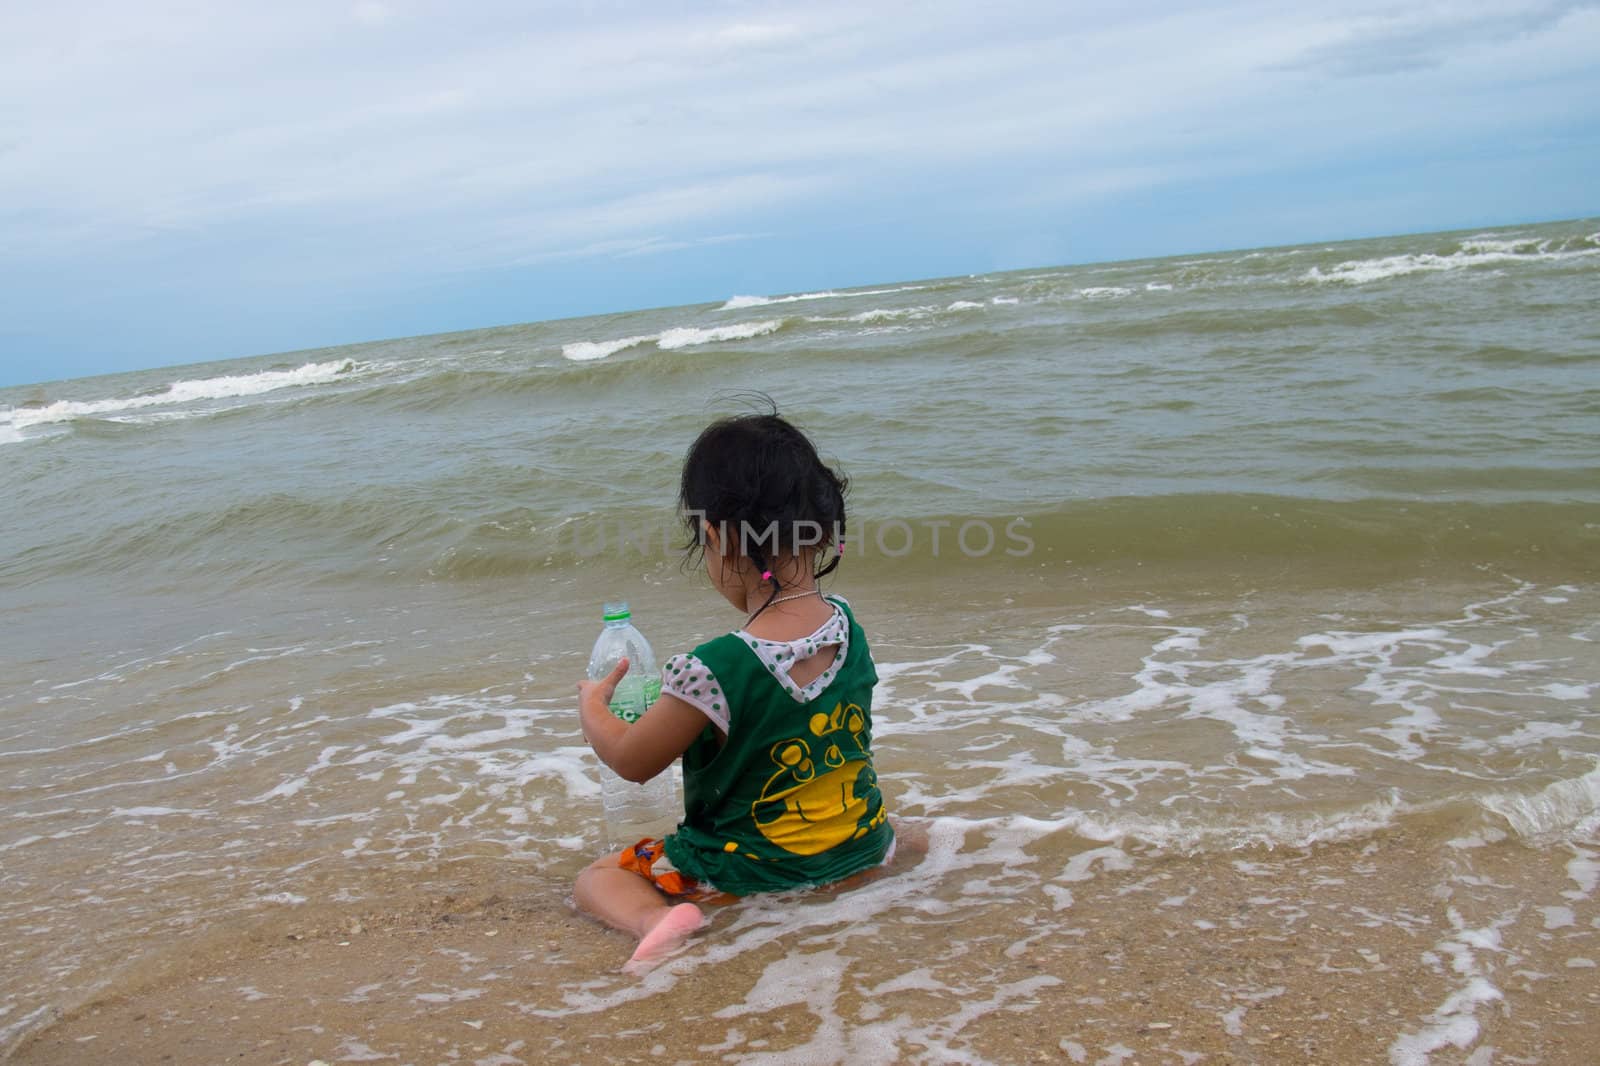 A girl on the beach, Thailand